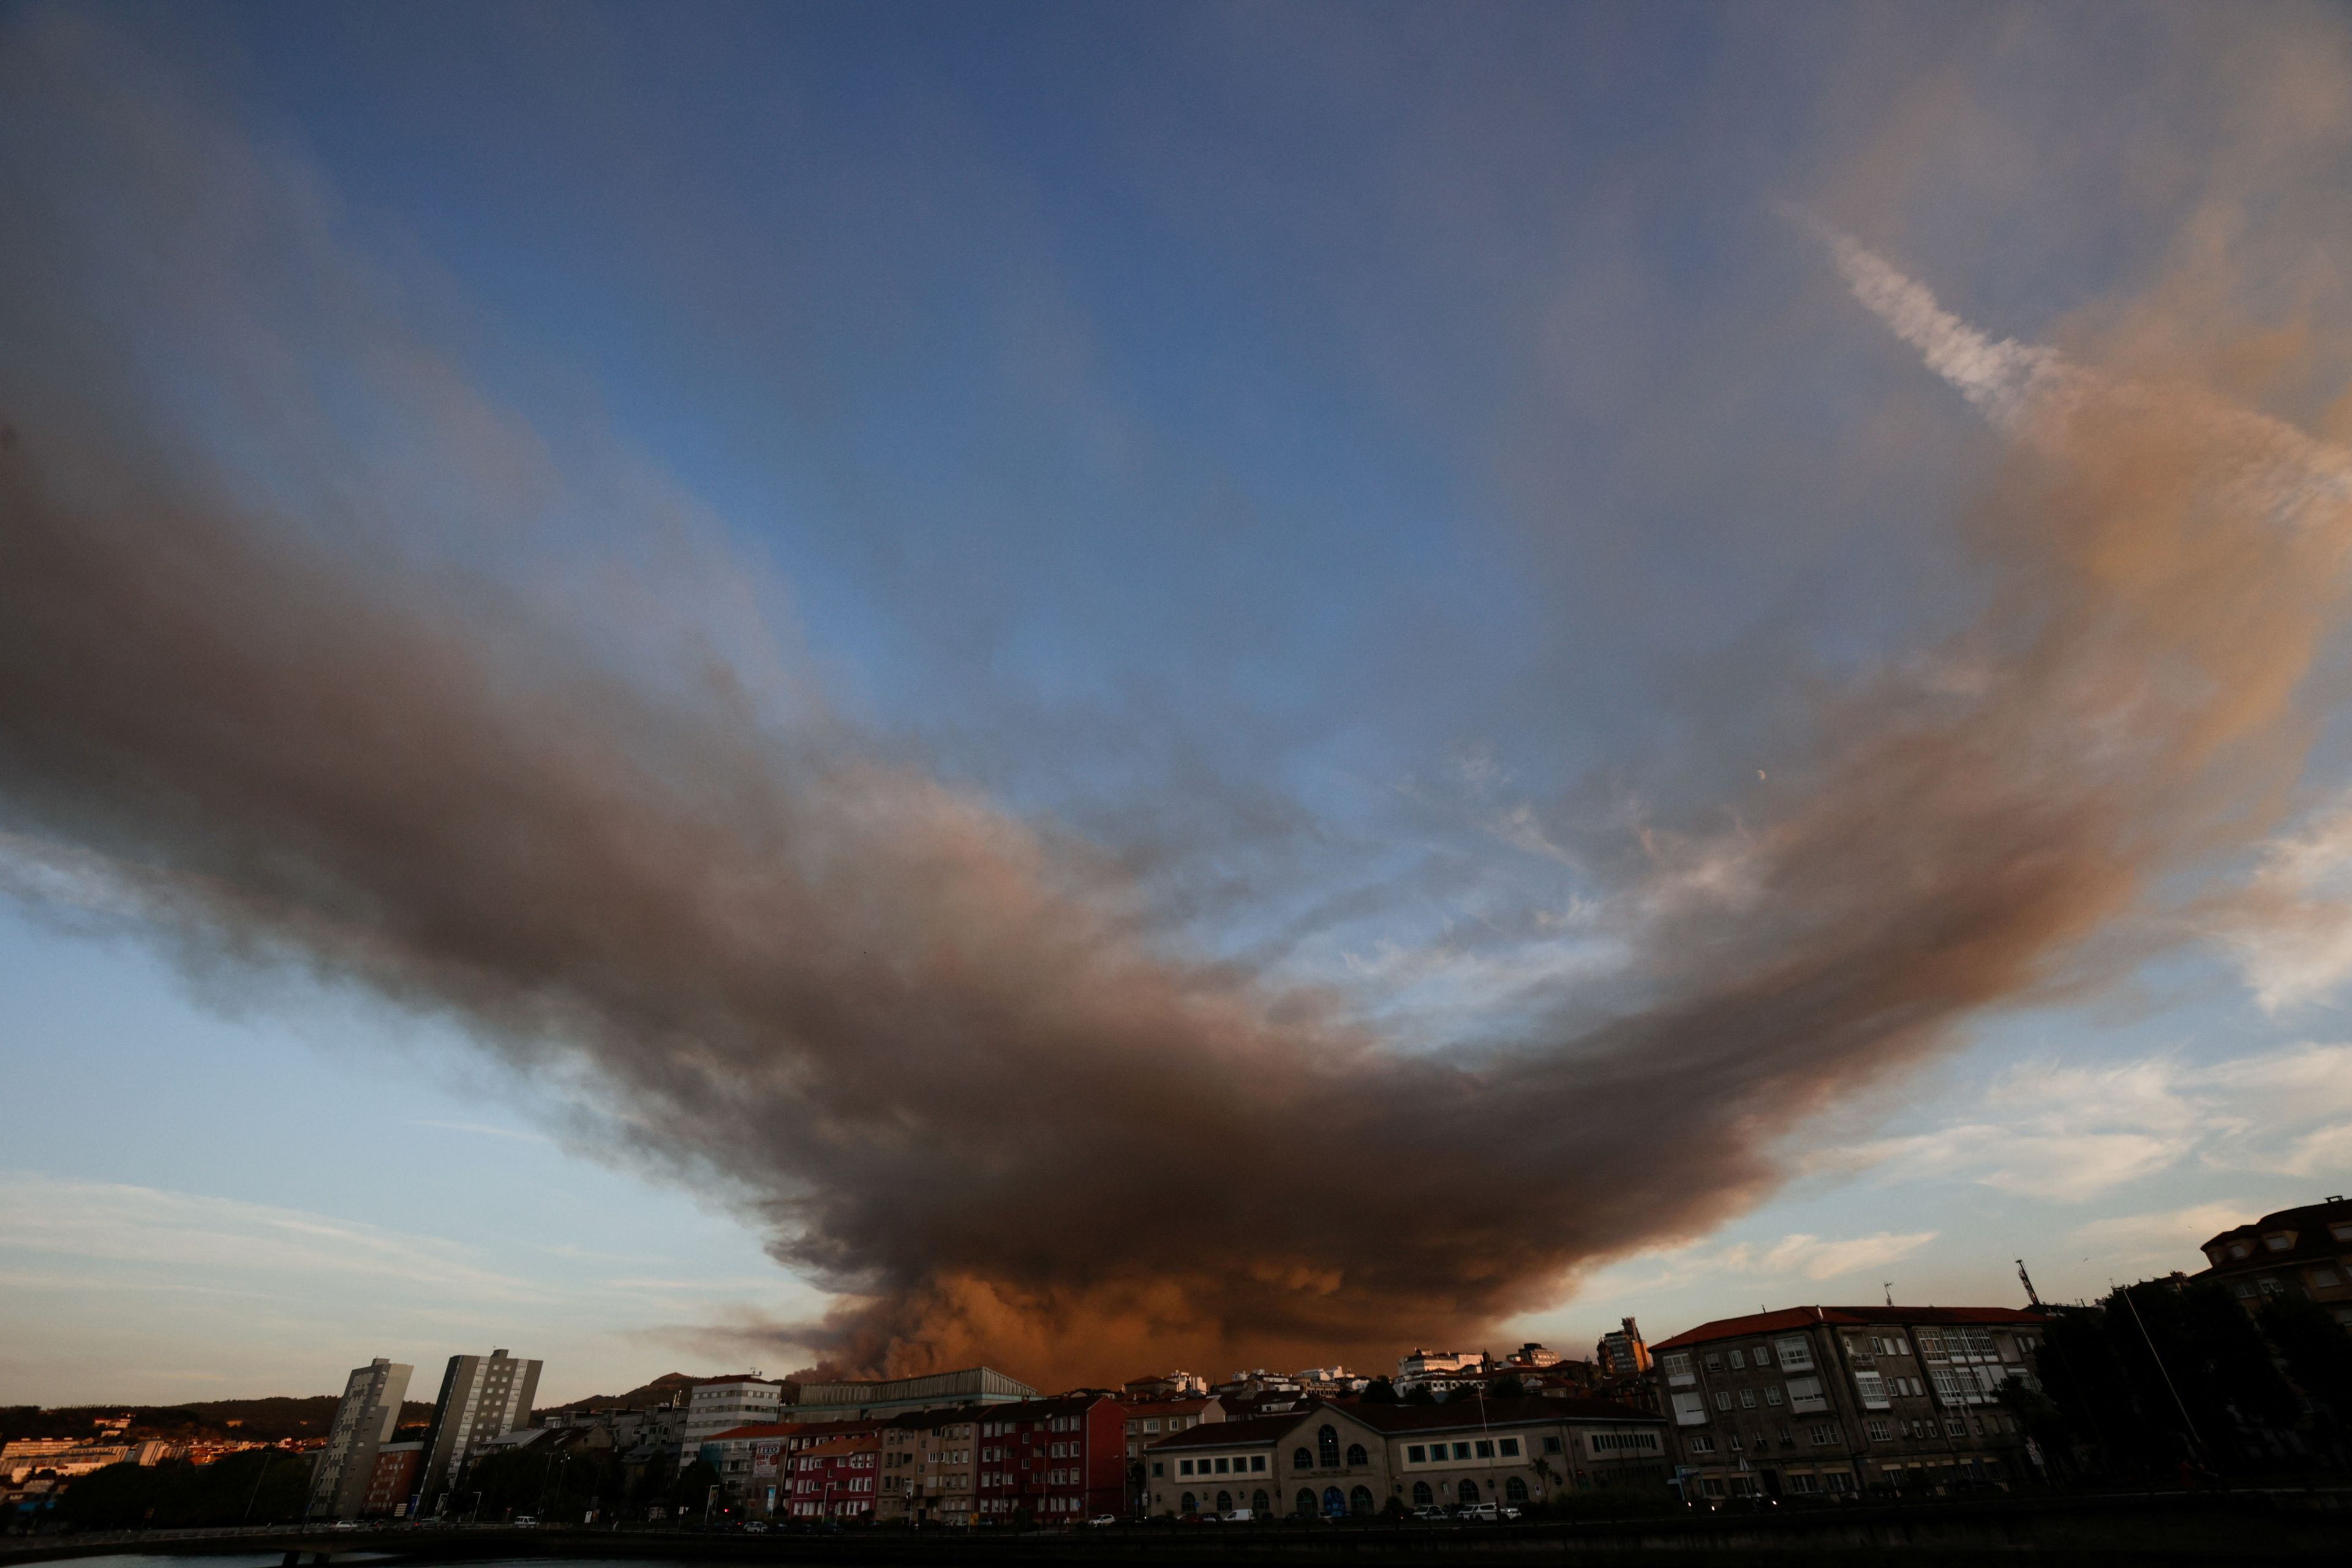 Los fuegos continúan. Siete incendios en Galicia arrasan más de 4.200 hectáreas en menos de una semana y se extienden en Ávila. En la imagen, el humo de un incendio forestal en la montaña de A Fracha se ve desde la ciudad de Pontevedra.